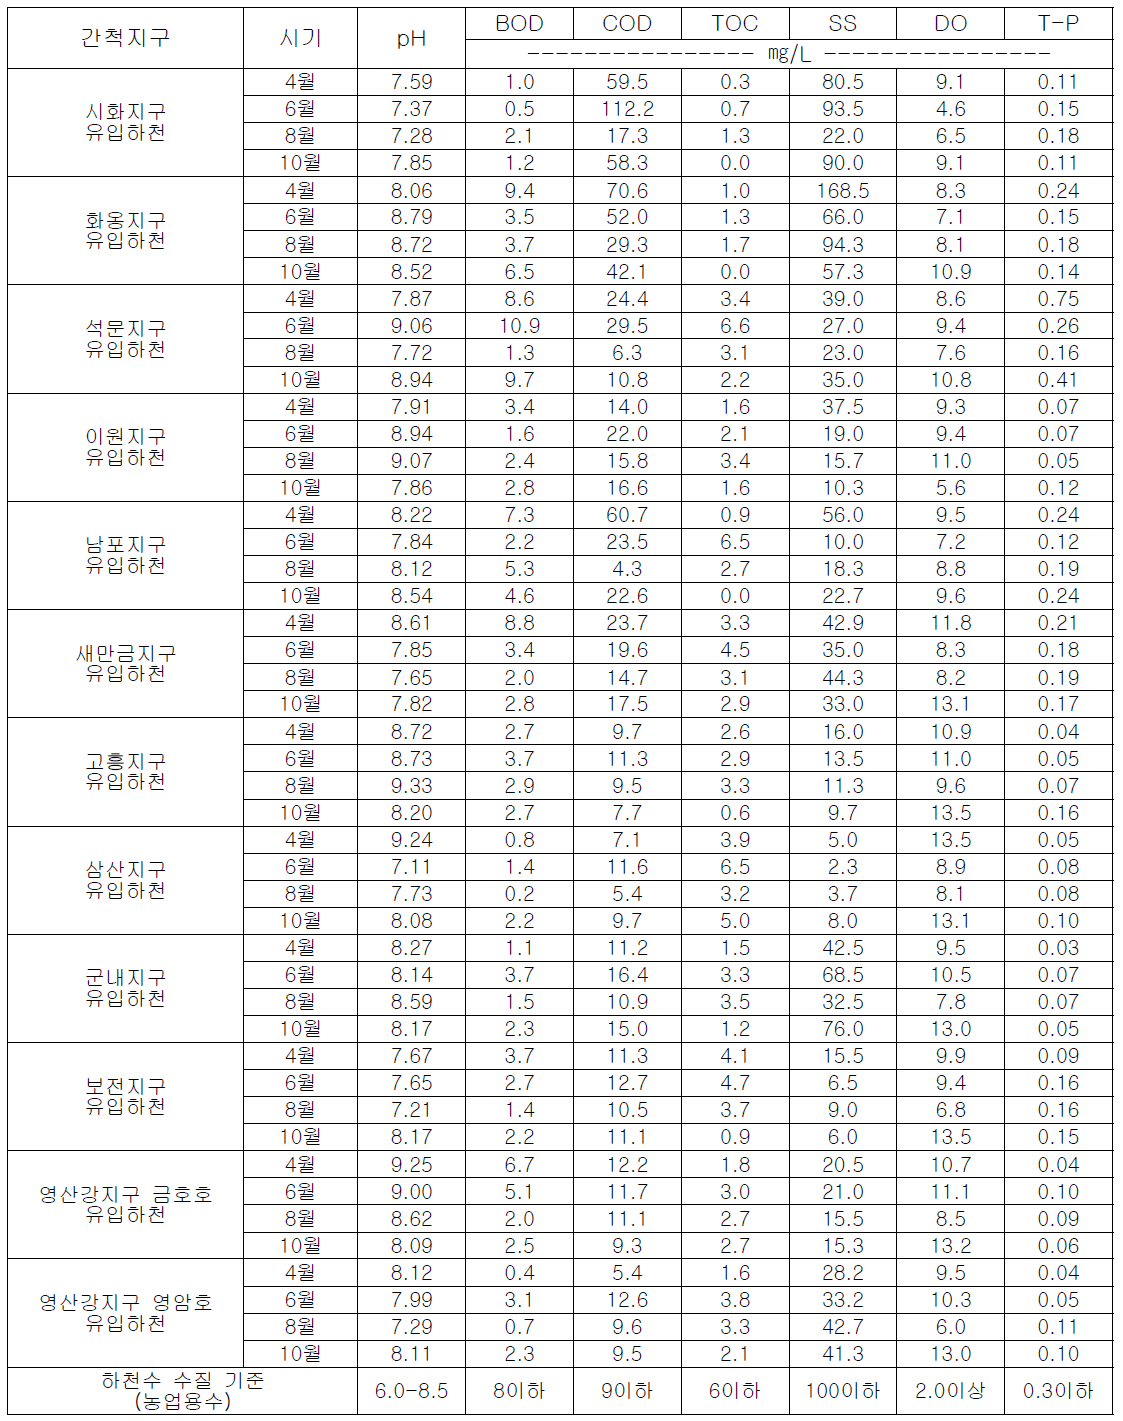 2014년 간척지 특성화 11지구 유입하천 수질 법적기준 항목 분석 결과